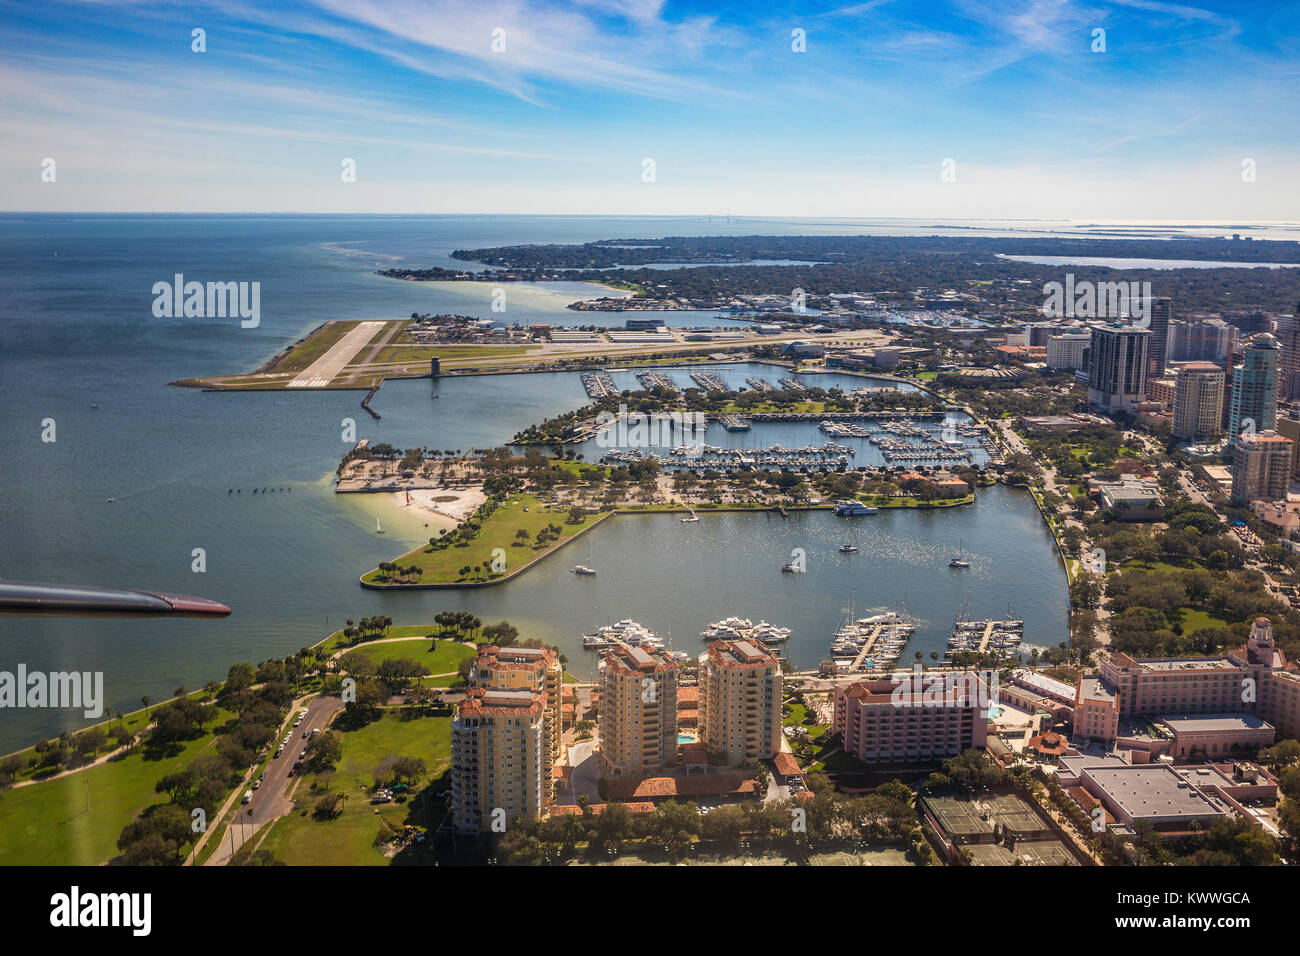 Vue aérienne du centre-ville de Saint-Pétersbourg, en Floride. Dans l'aéroport de Saint-Pétersbourg. Floride, États-Unis Banque D'Images